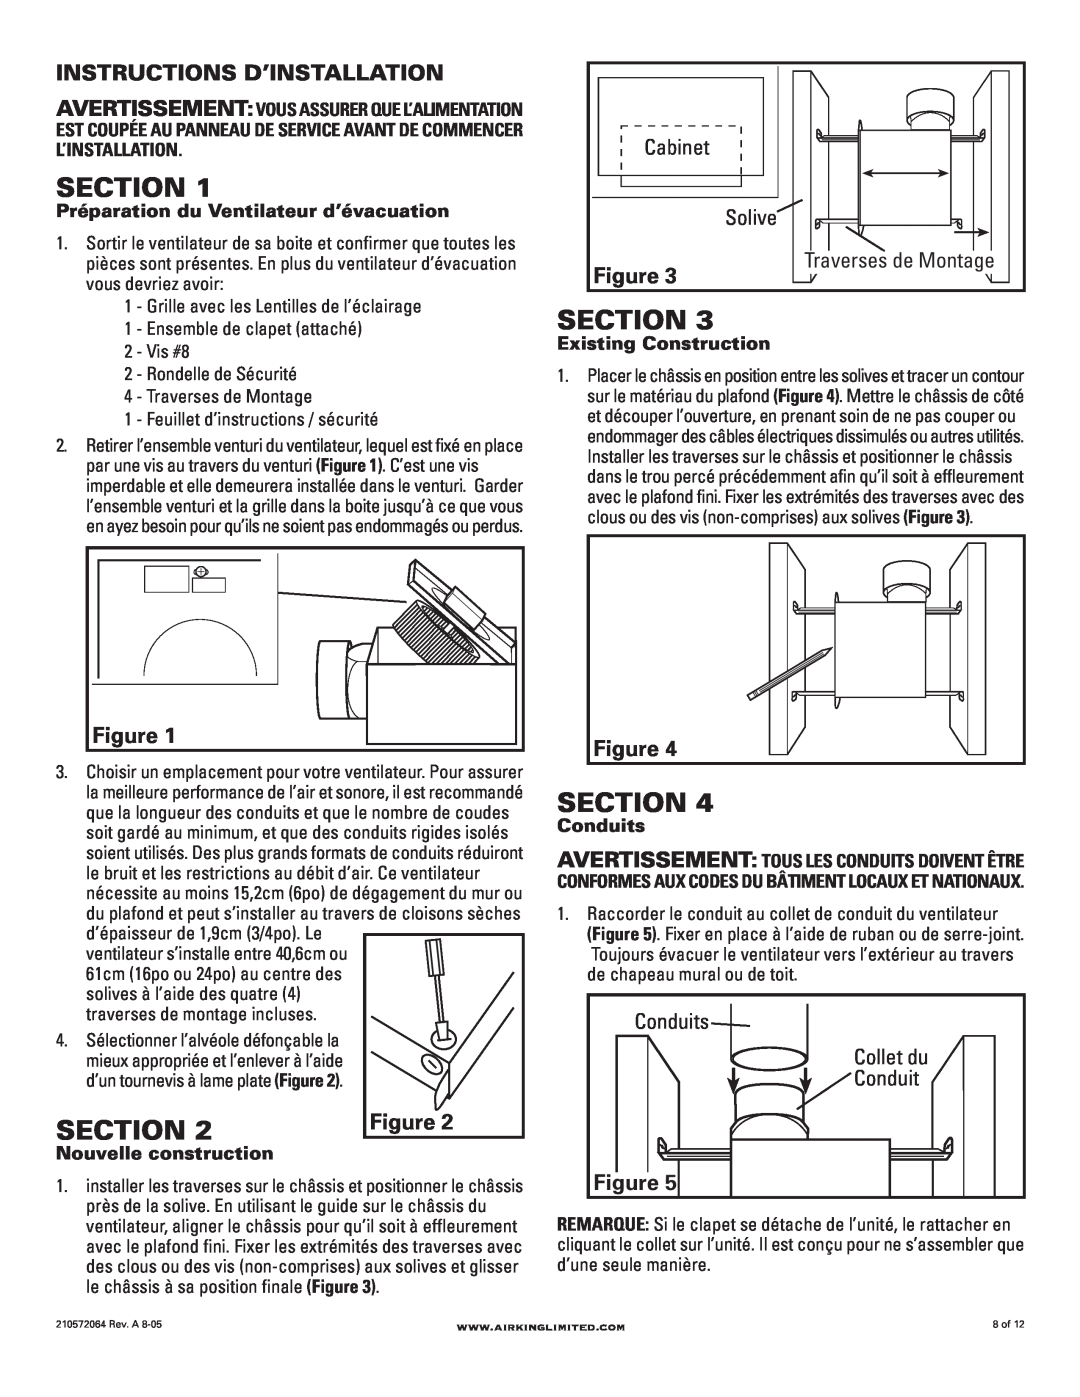 Air King DRLC107 Section, Instructions D’Installation, Cabinet, Solive, Conduits, Grille avec les Lentilles de l’éclairage 